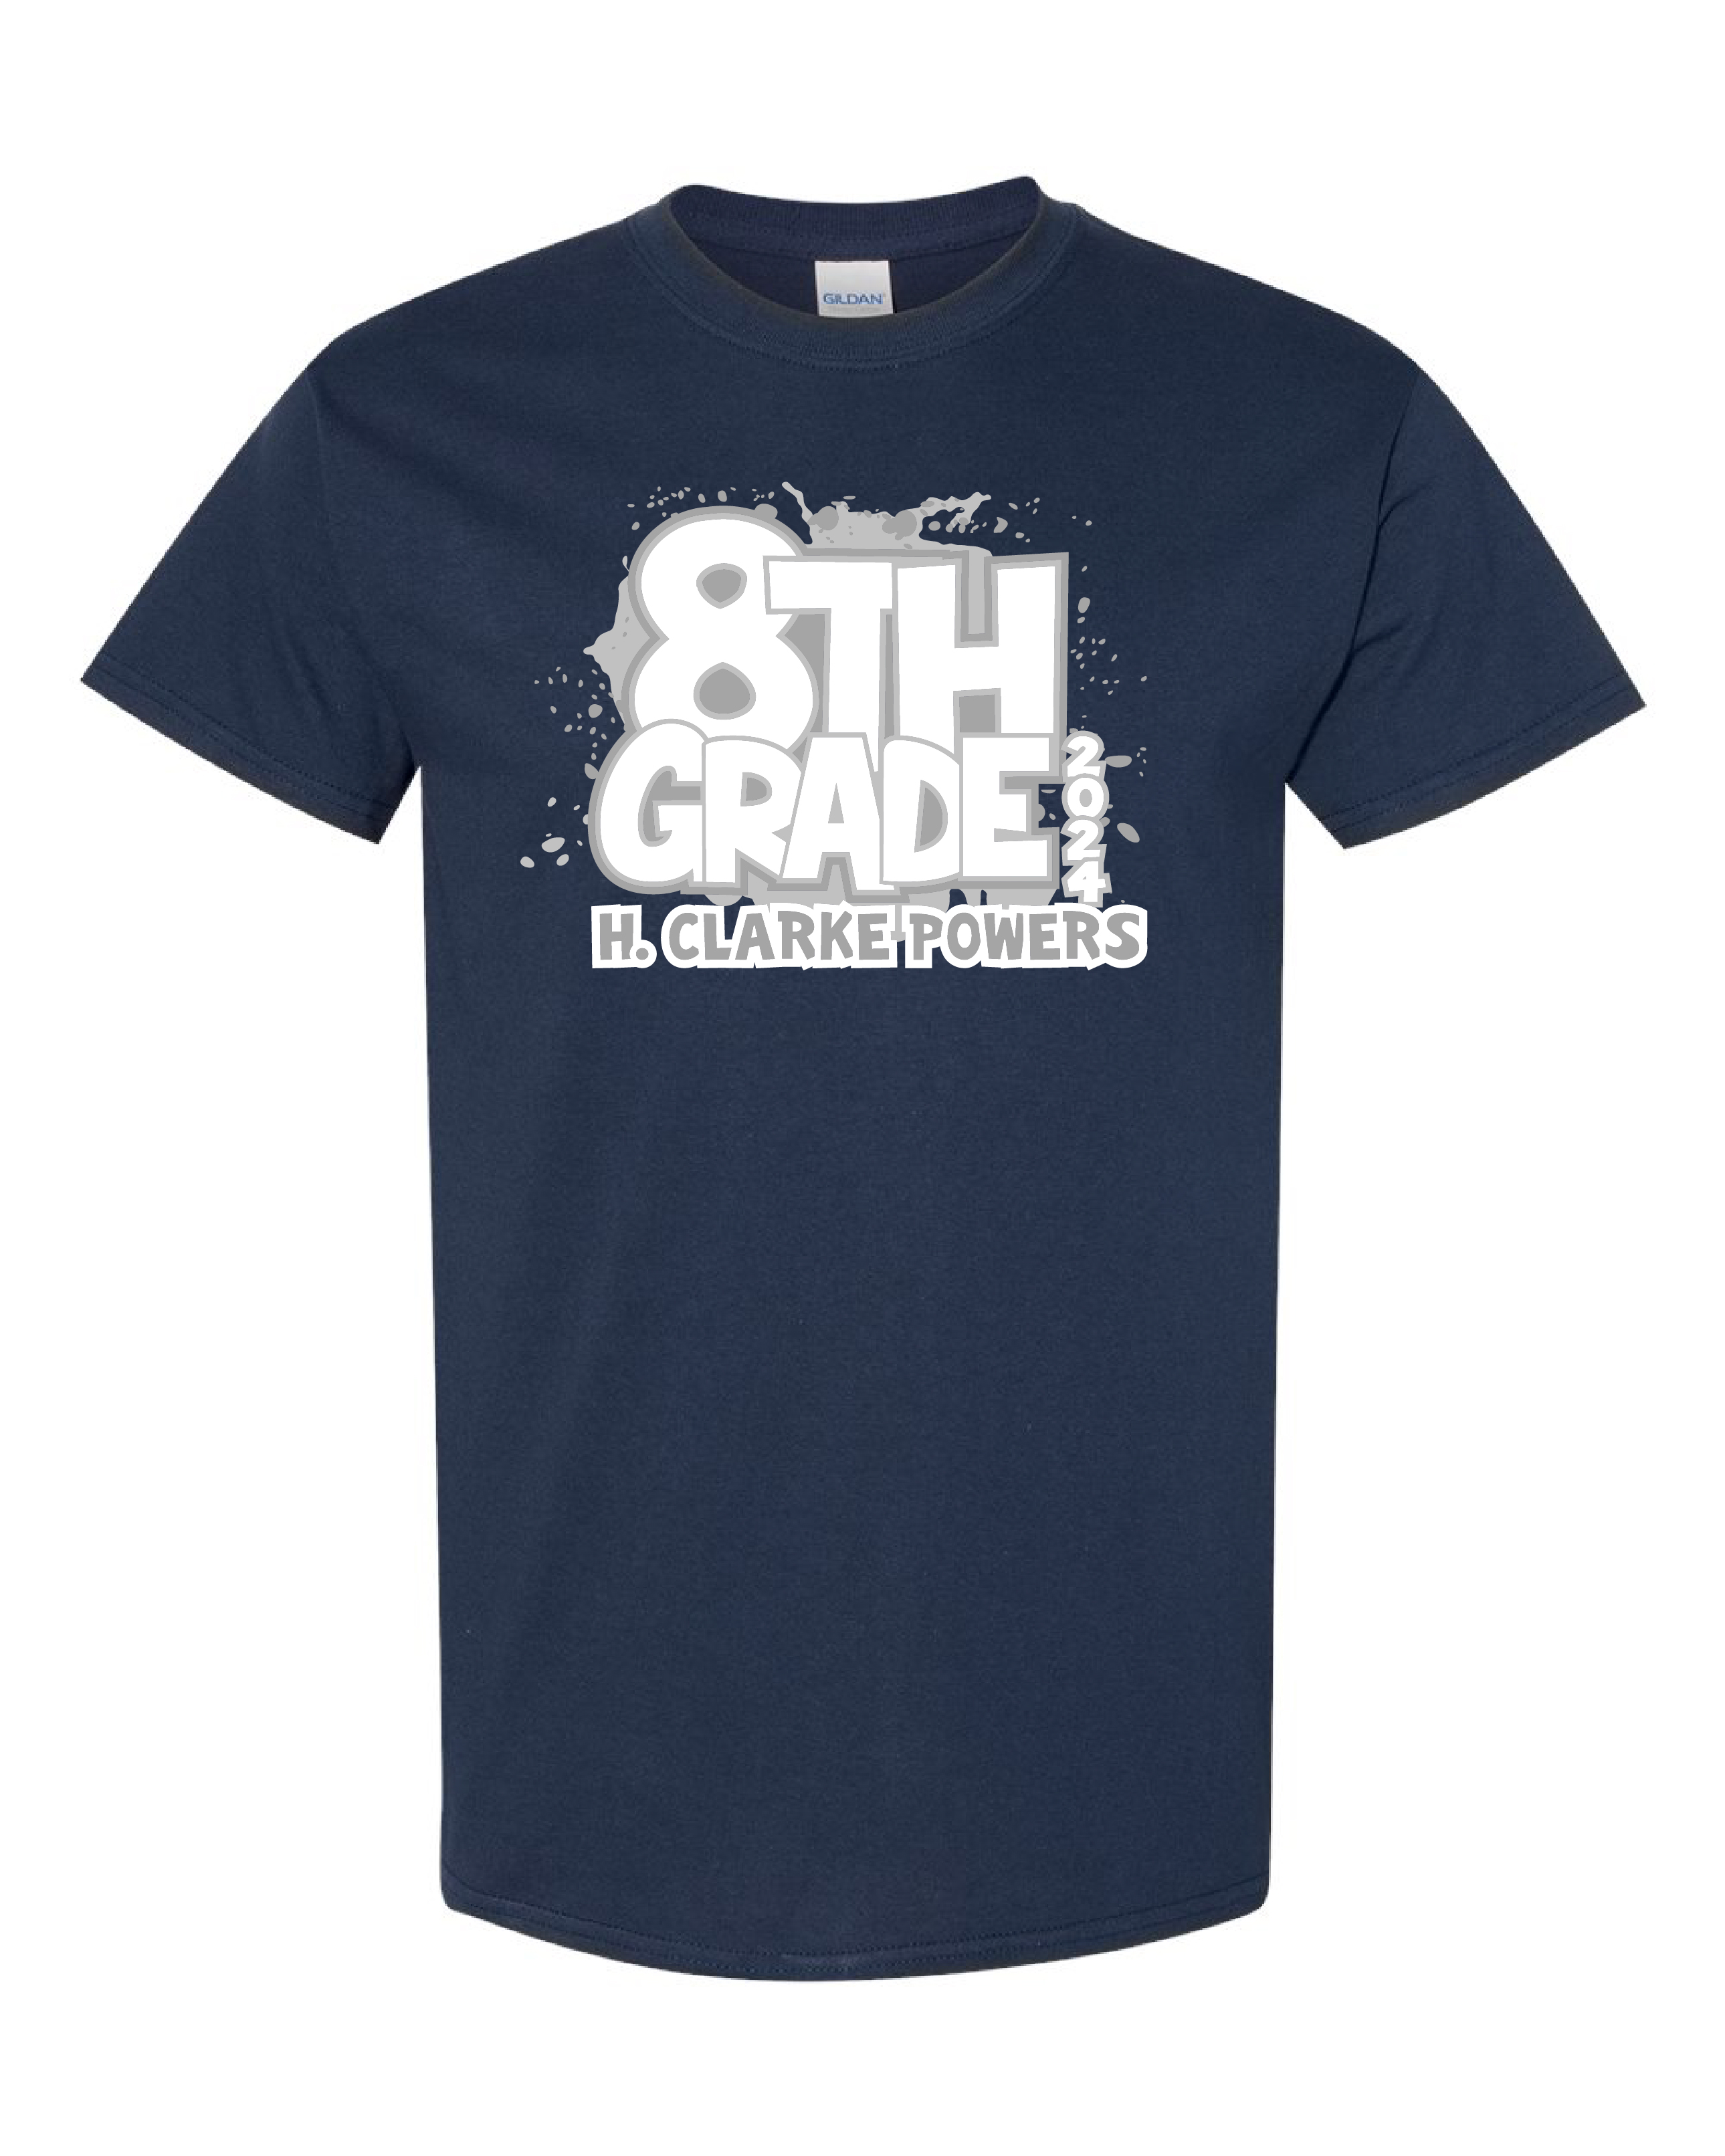 8th Grade Shirts